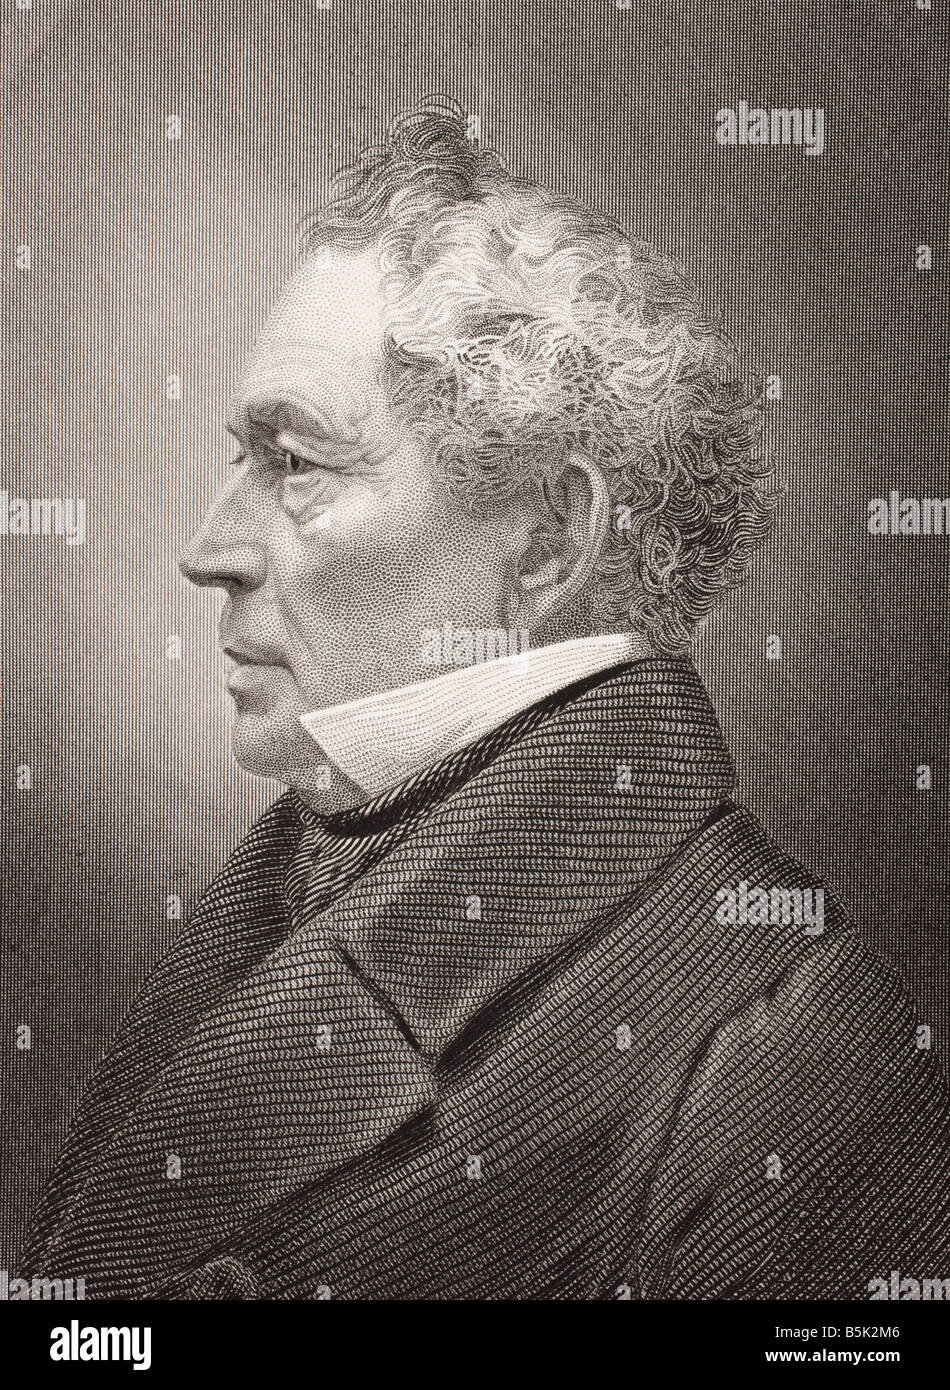 Edward Everett, 1794-1865. Oratore, essayista, diplomatico e statista americano. Foto Stock